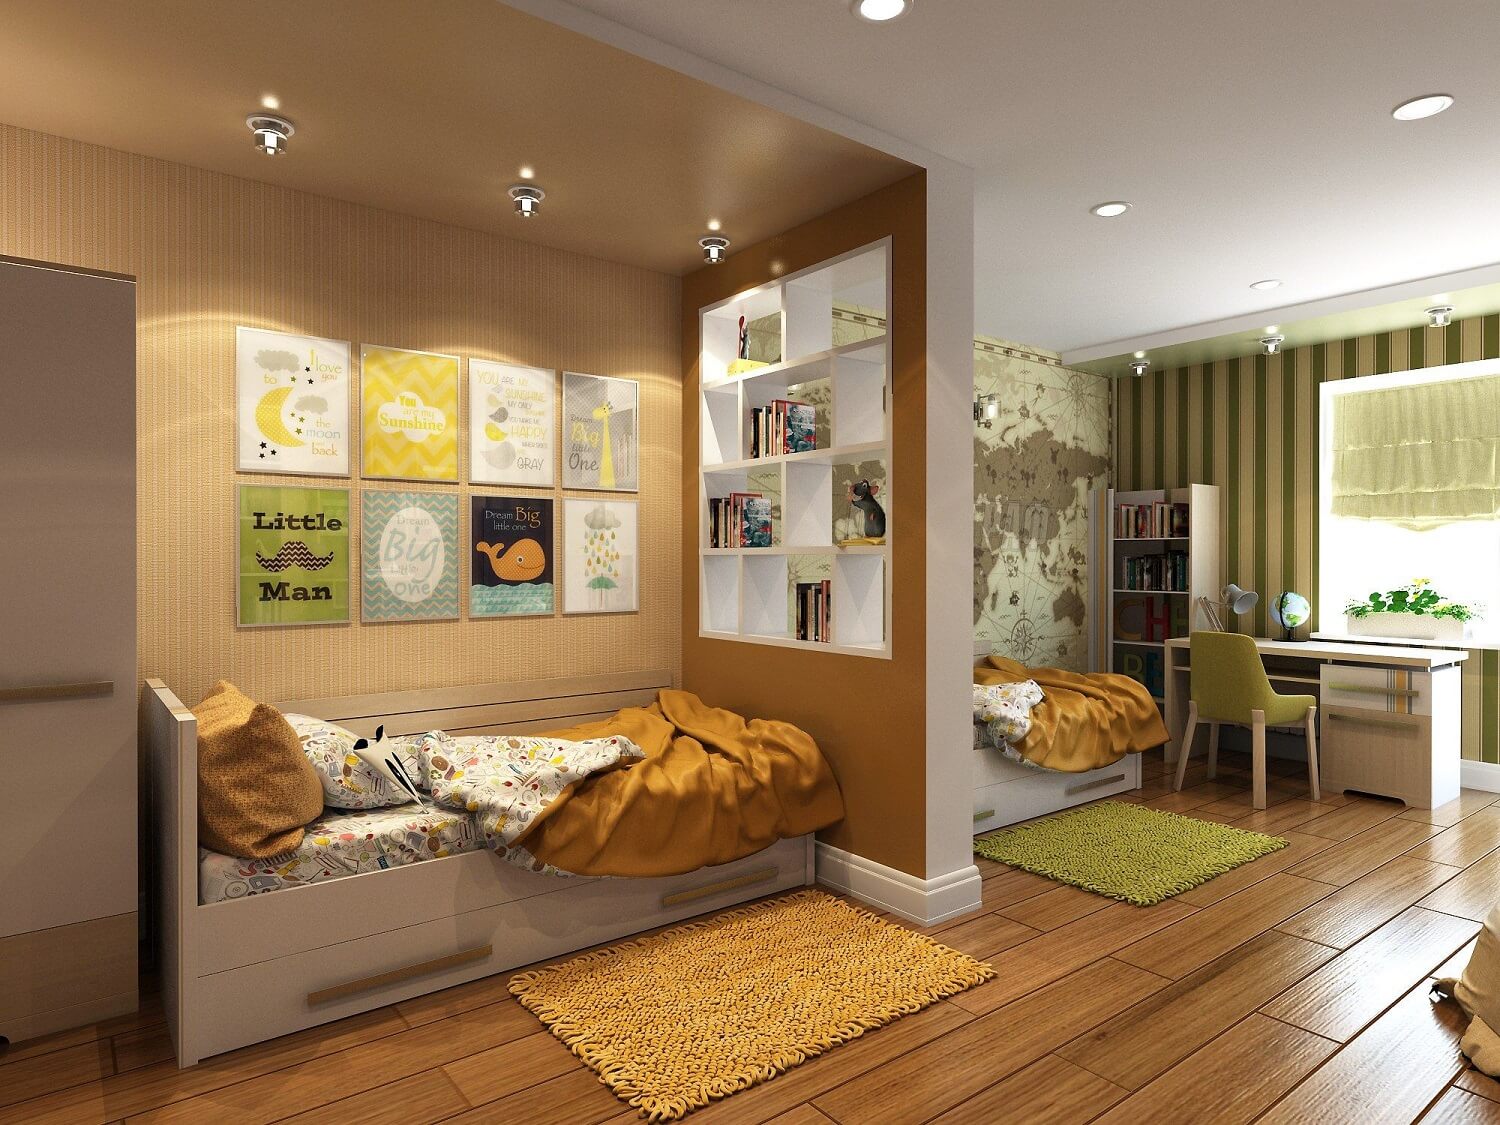 Планировка однокомнатной квартиры для семьи с двумя детьми, расположение мебели в квартире с ребенком